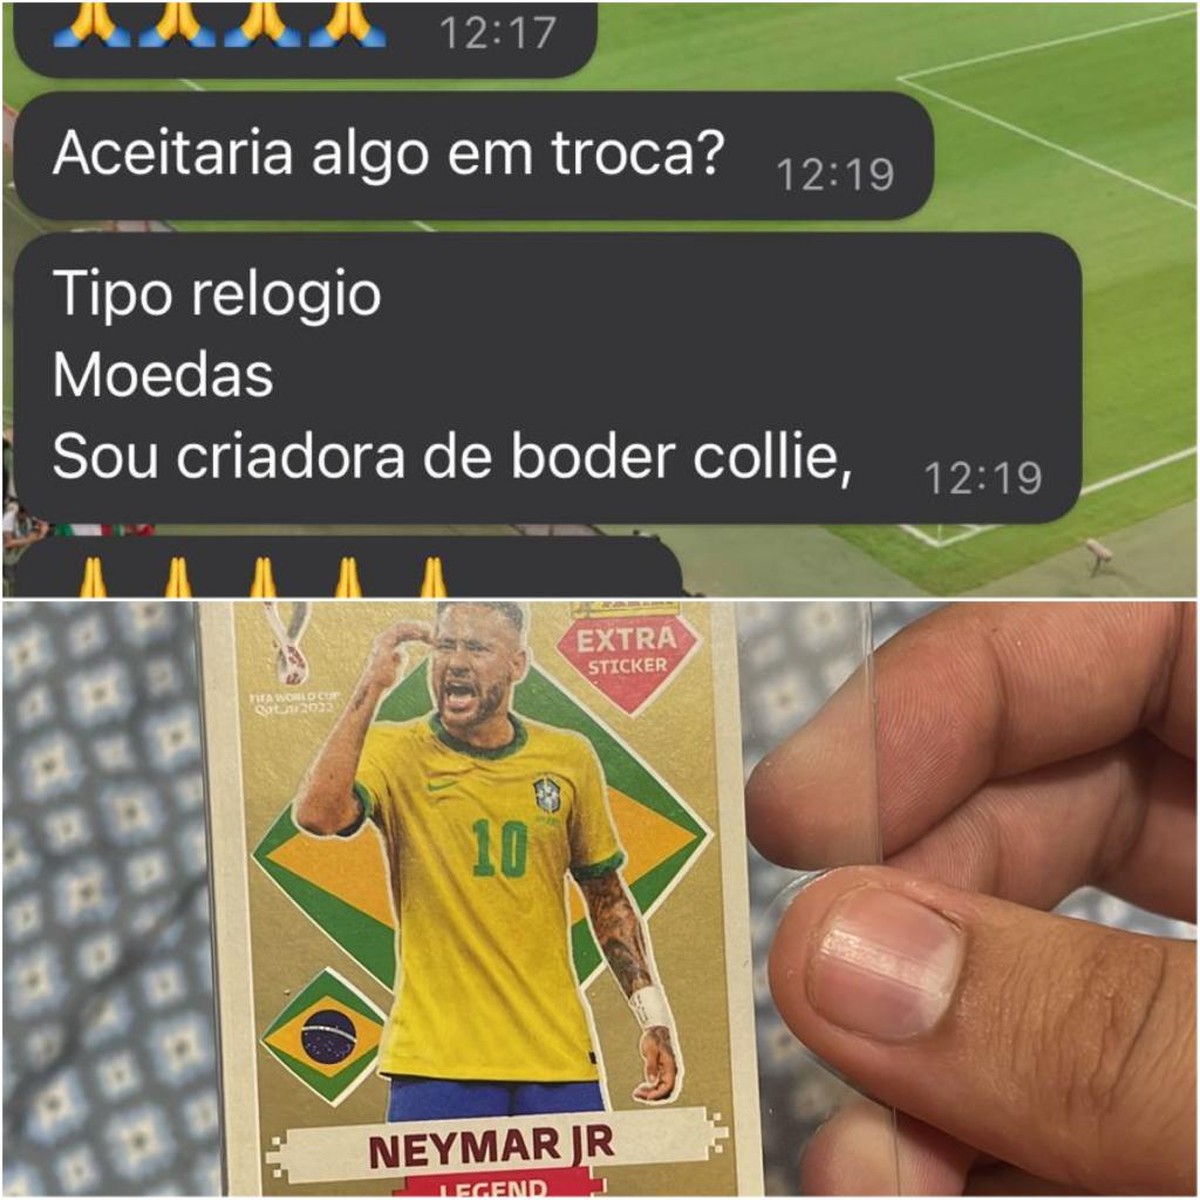 Figurinha rara de Neymar no álbum da Copa é vendida por R$ 9 mil - Correio  da Amazônia